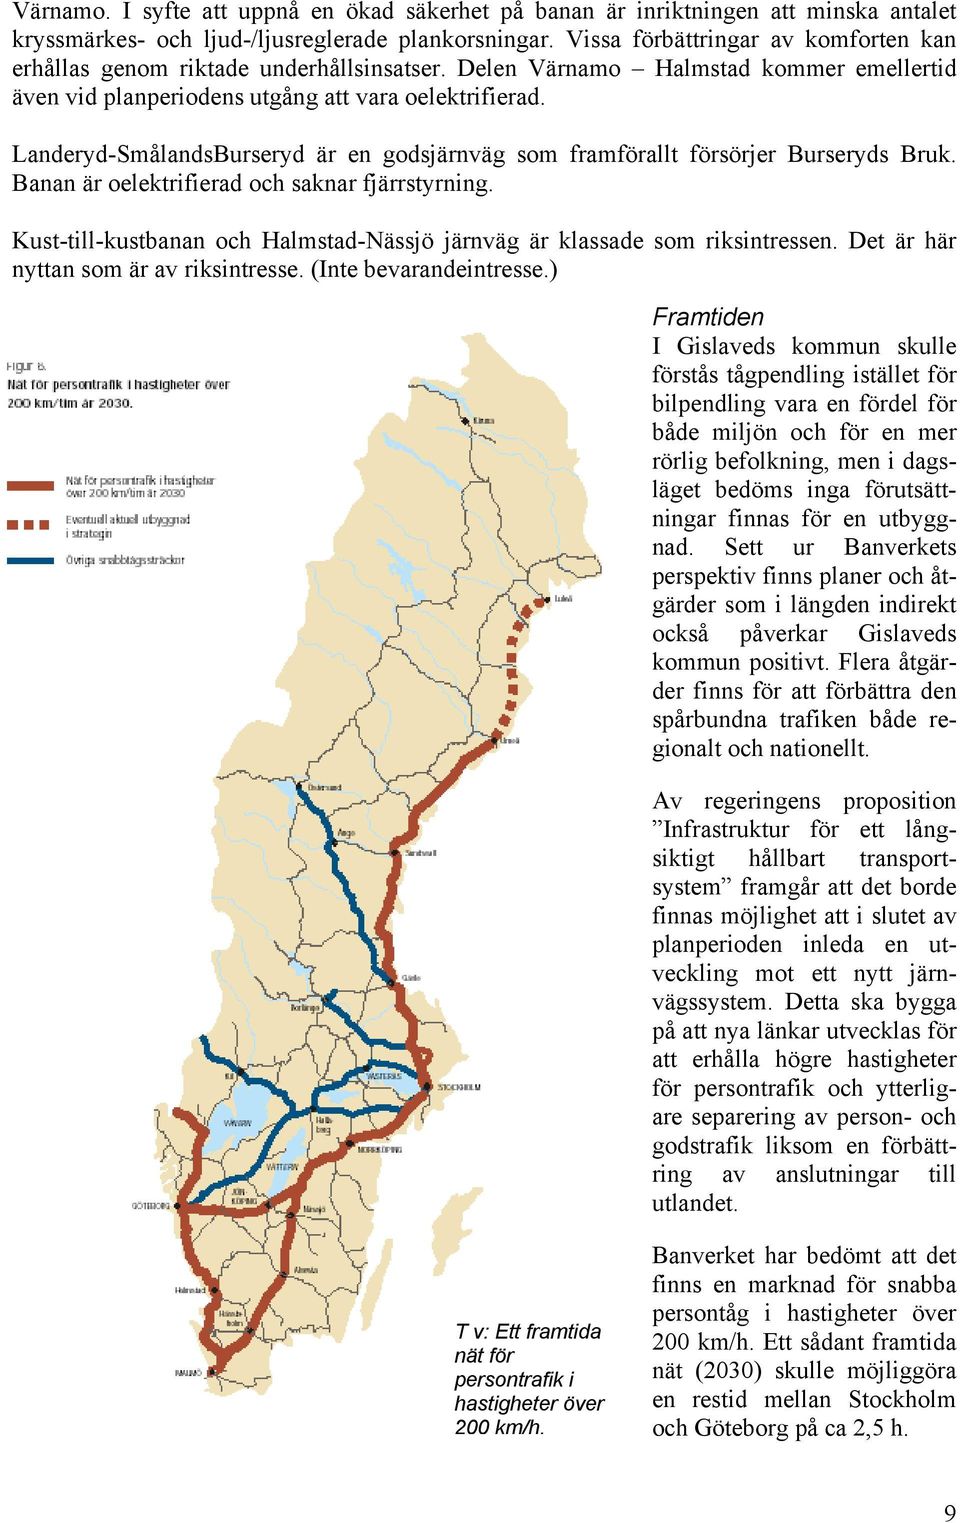 Landeryd-SmålandsBurseryd är en godsjärnväg som framförallt försörjer Burseryds Bruk. Banan är oelektrifierad och saknar fjärrstyrning.